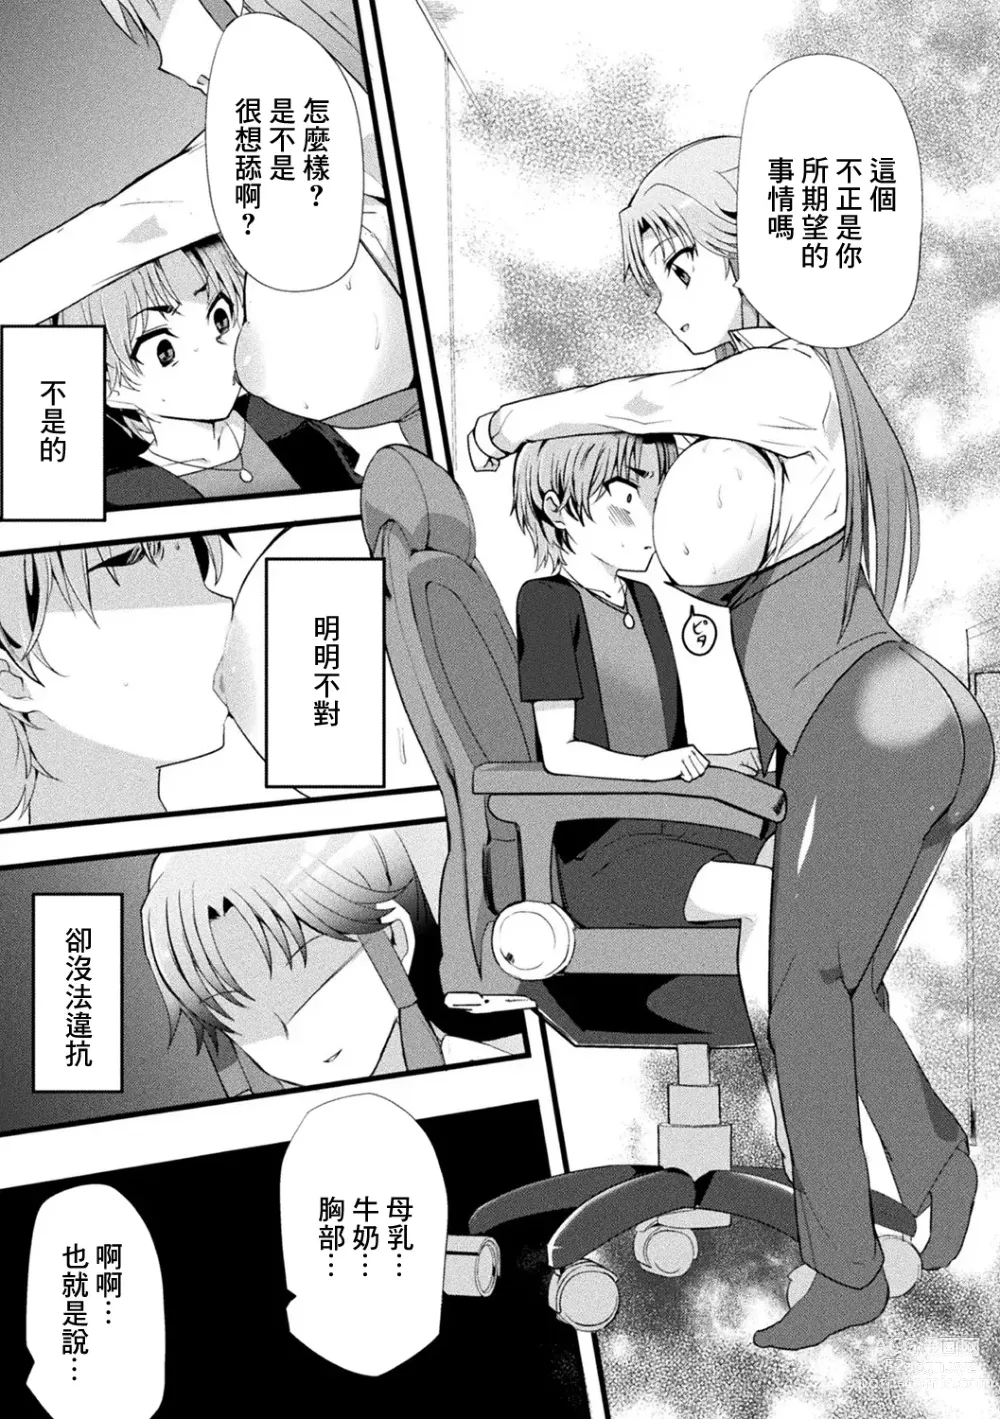 Page 9 of manga Mama Doko Doko - Mom! Where are you?